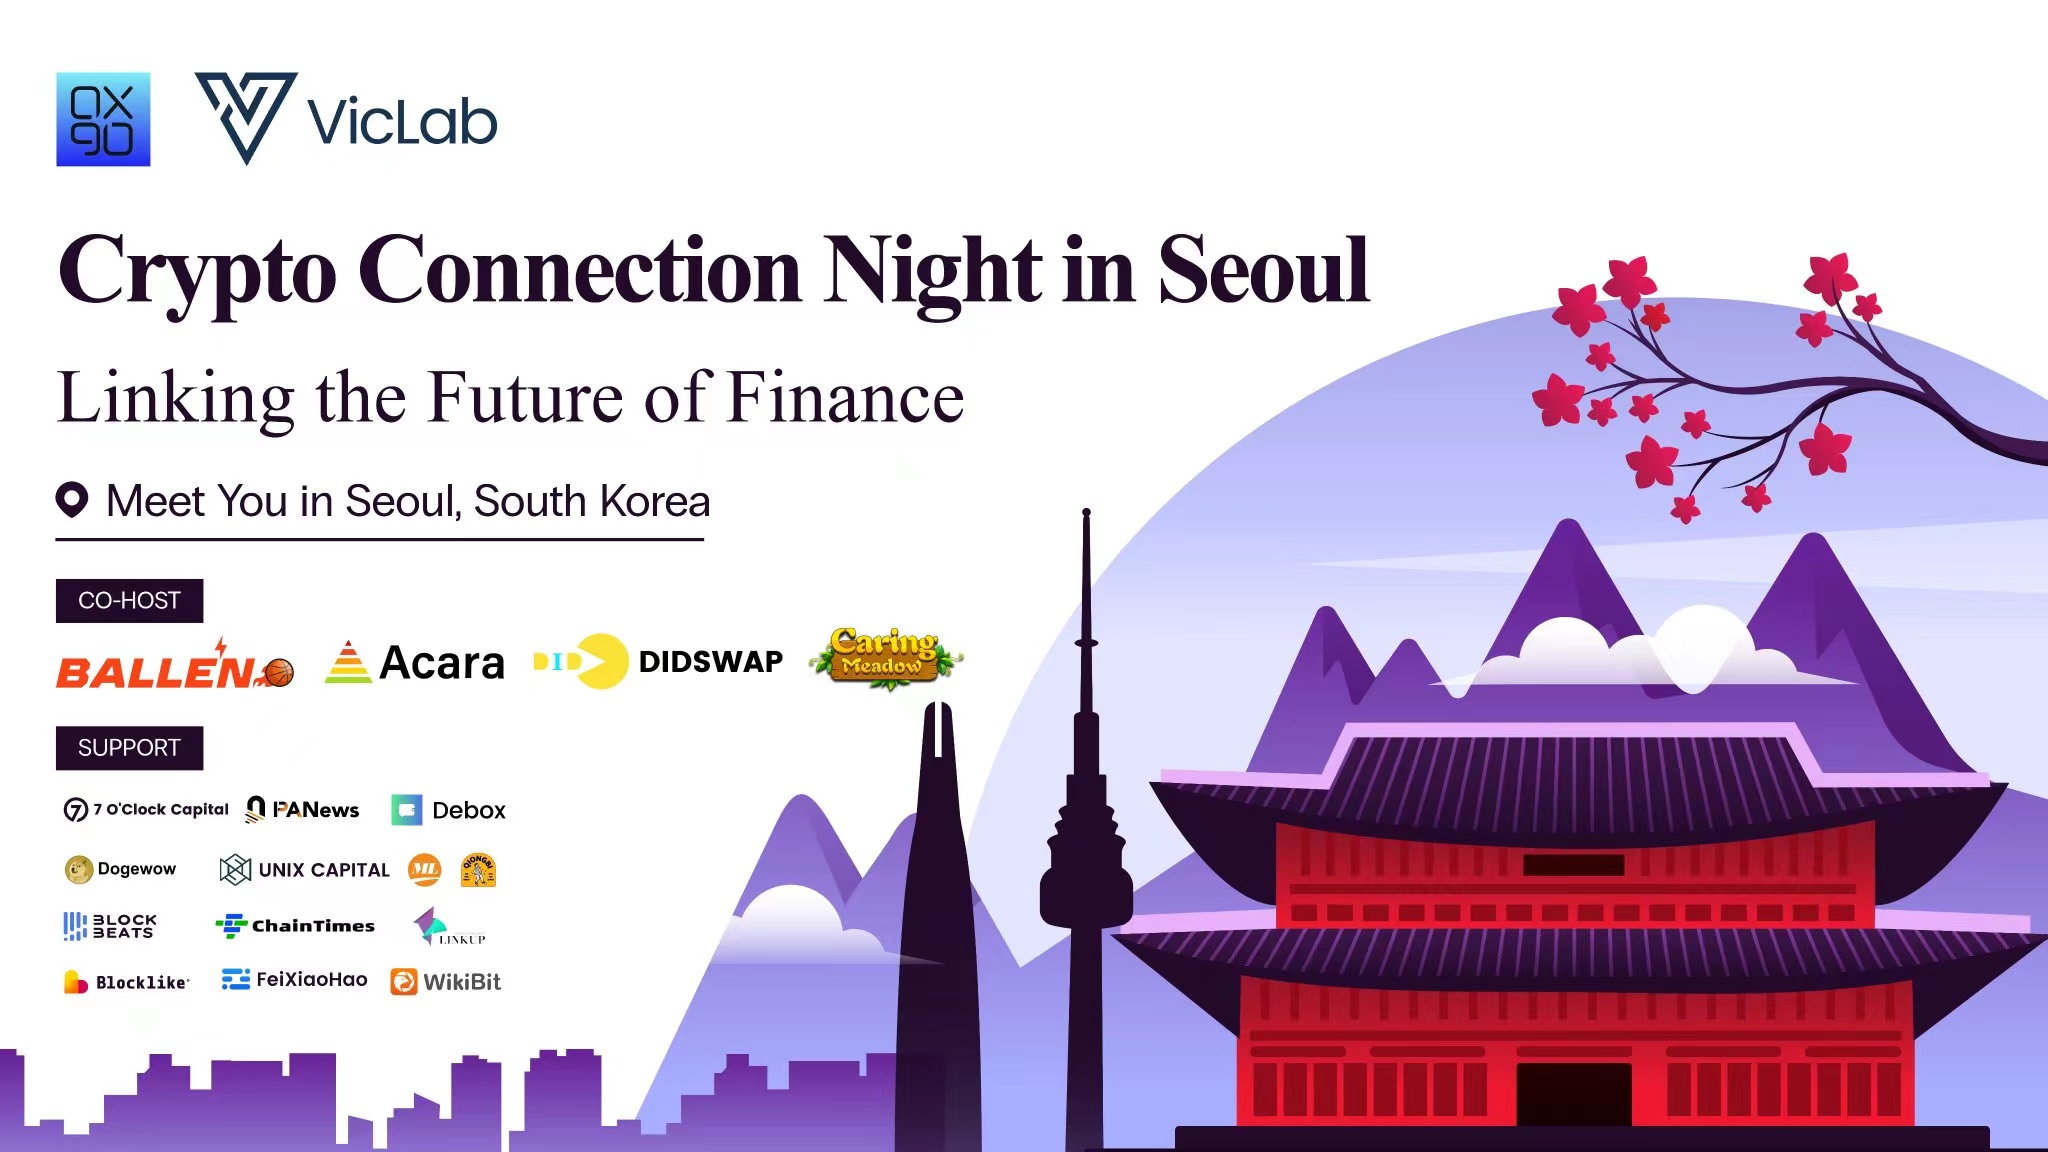 由0x90和viclab联合主办的“Crypto Connection Night in Seoul”圆满结束